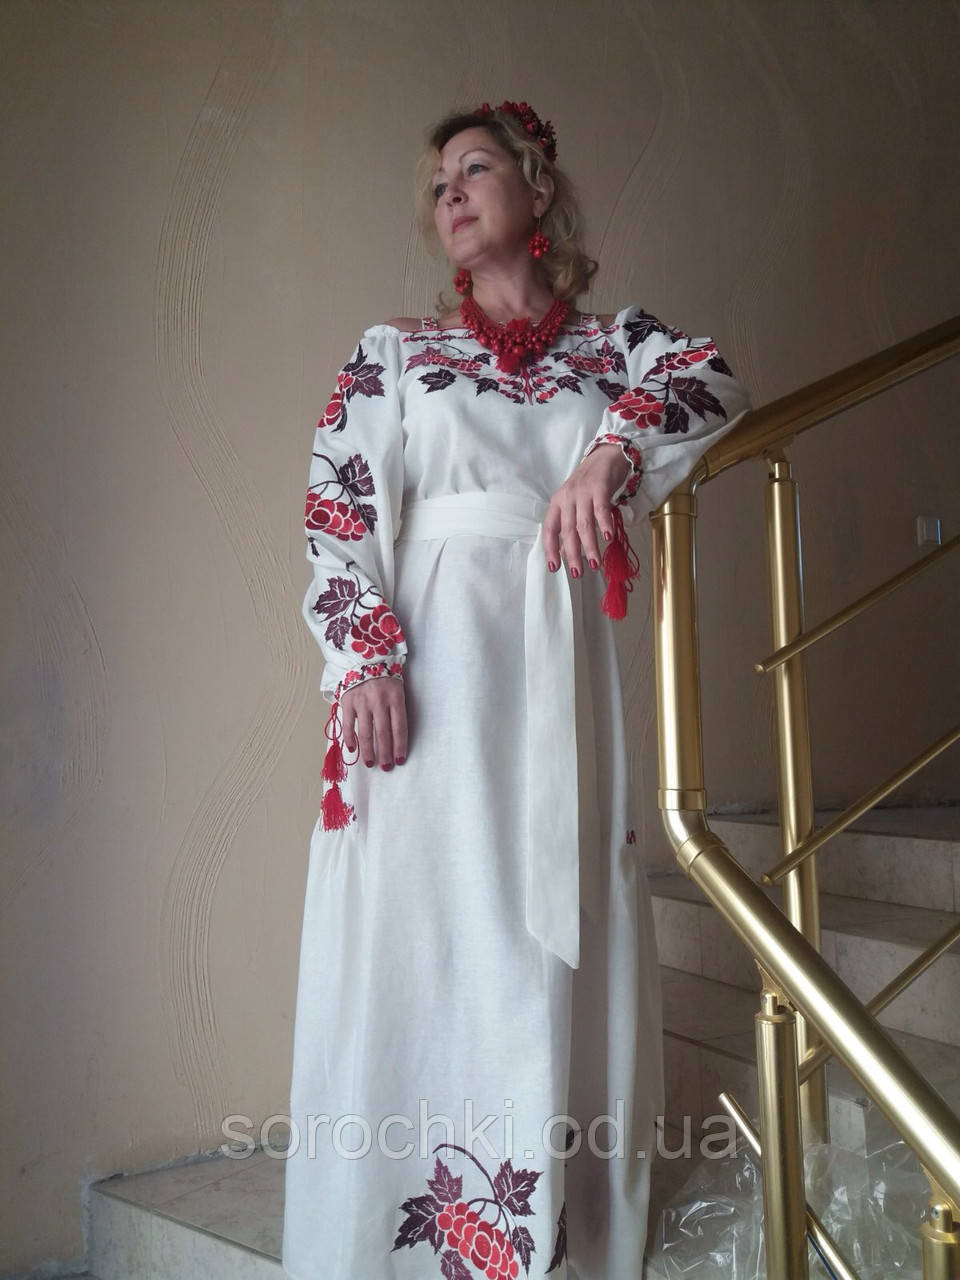 Плаття жіноче, біле, з вишивкою в етнічному стилі, вишивка "Каліна", льон.